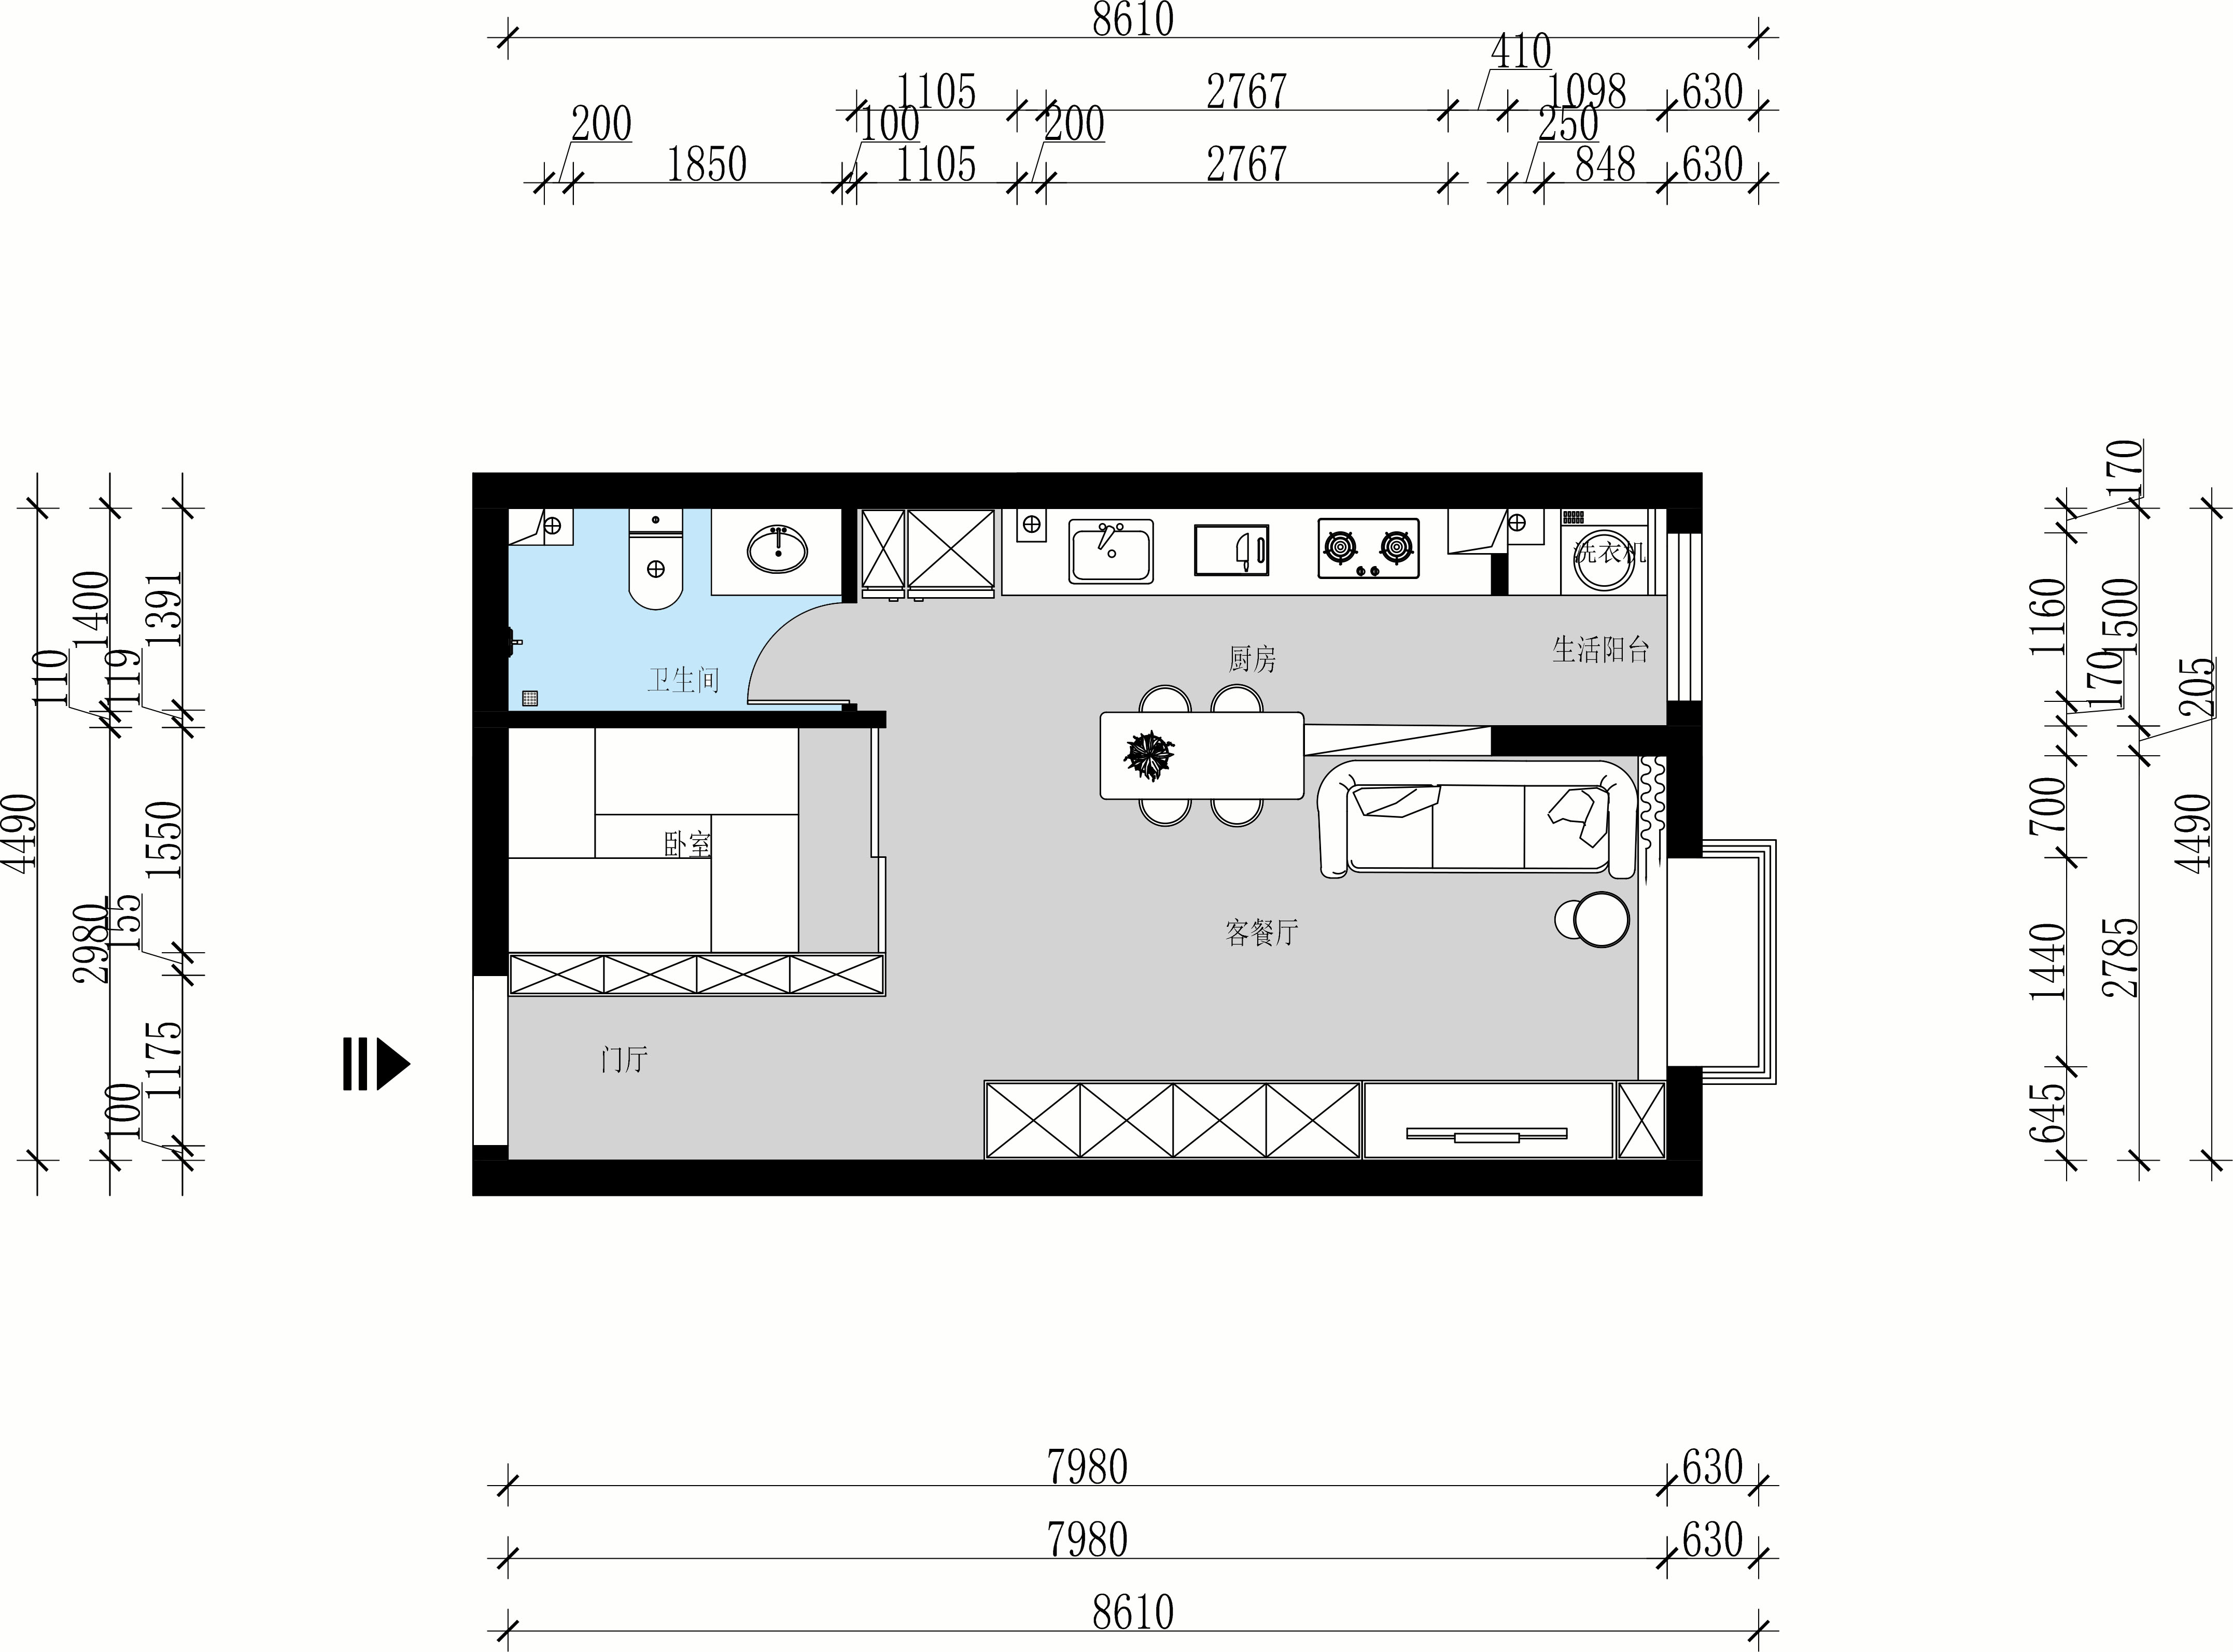 简约风格小户型经济型50平米客厅吊顶沙发效果图_齐家网装修效果图